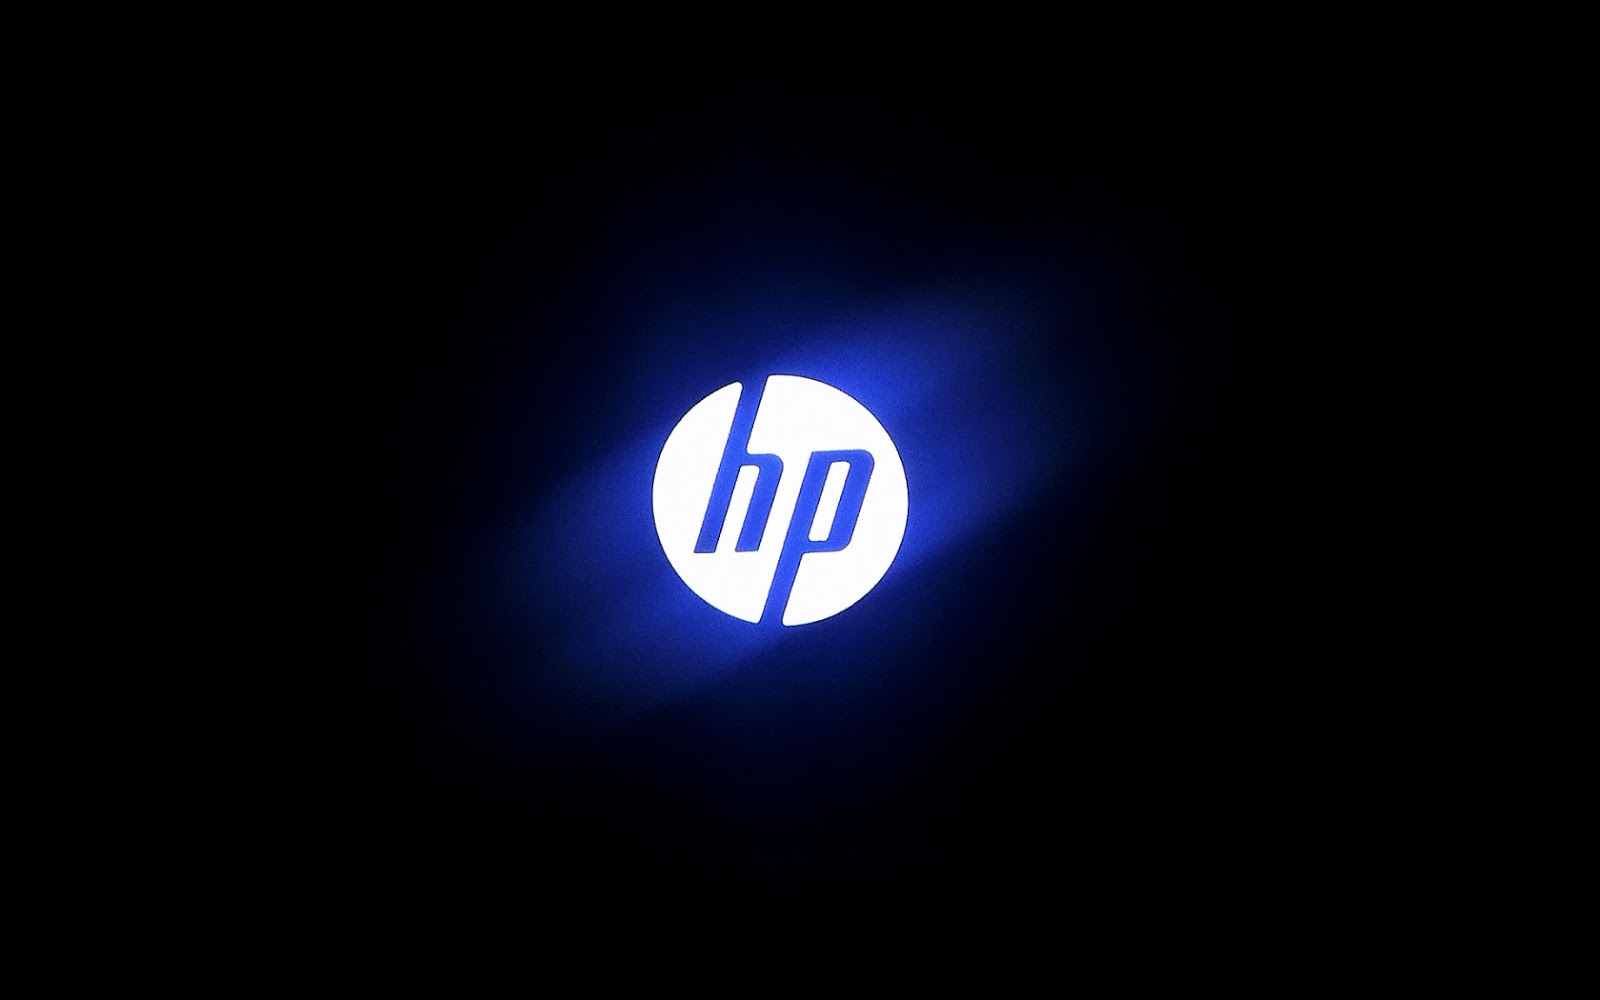 50+] HP Laptop Wallpaper Downloads - WallpaperSafari